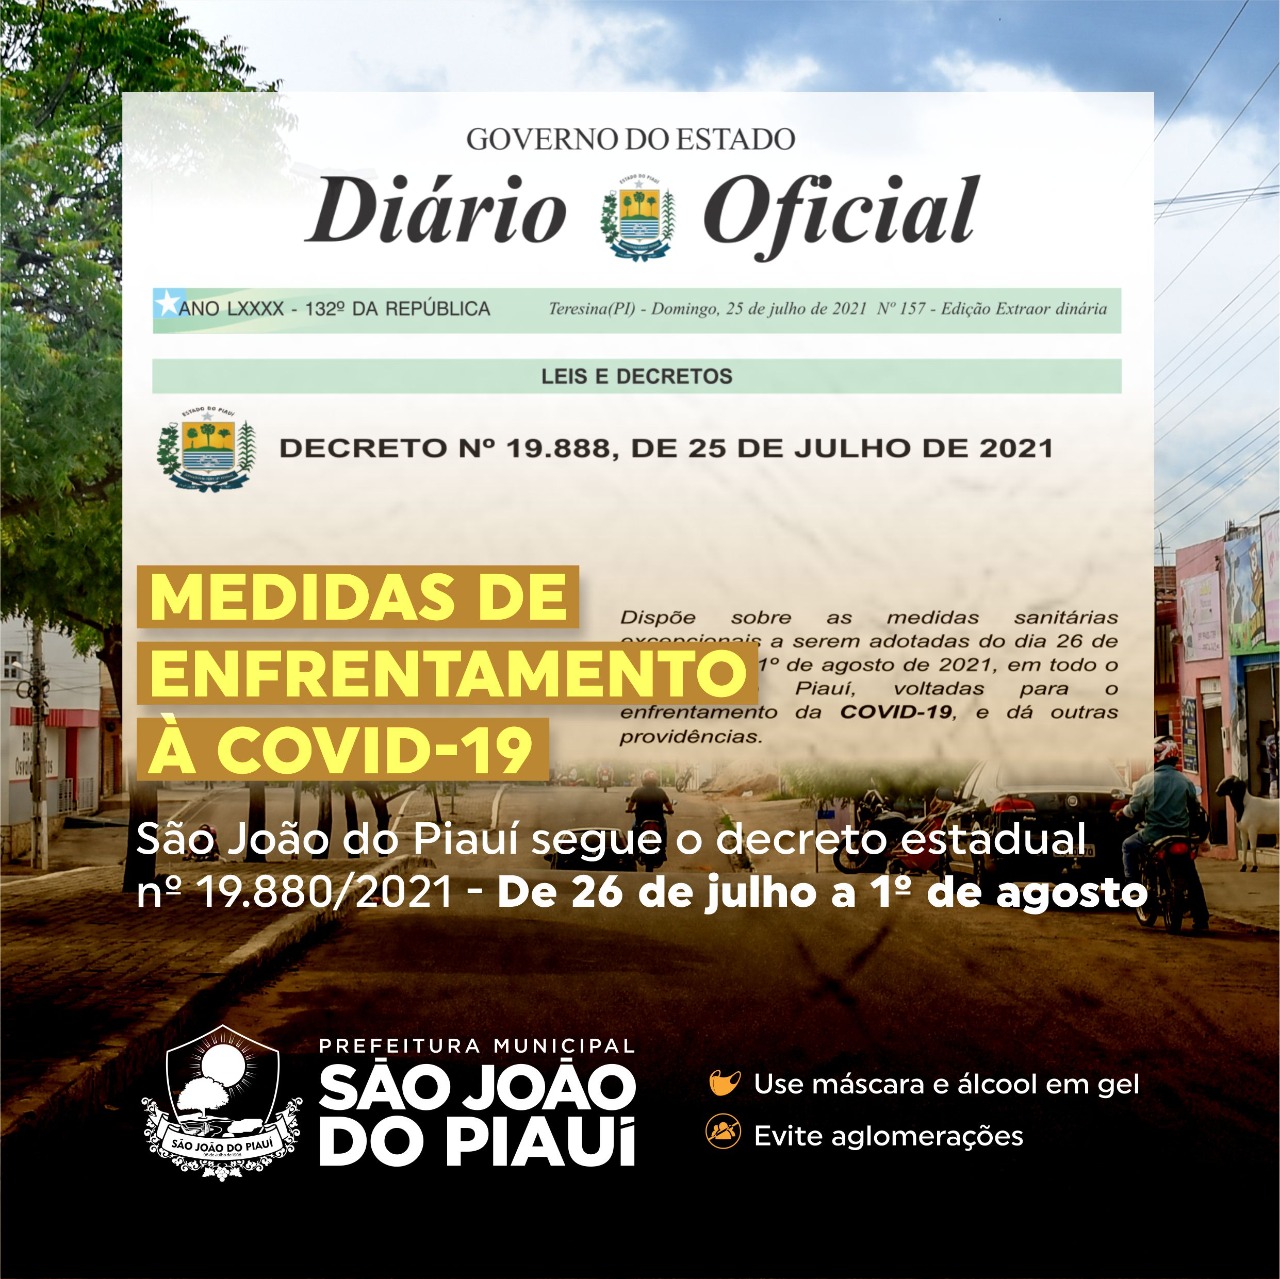 São João do Piauí adota decreto estadual como medida para enfrentamento à covid-19